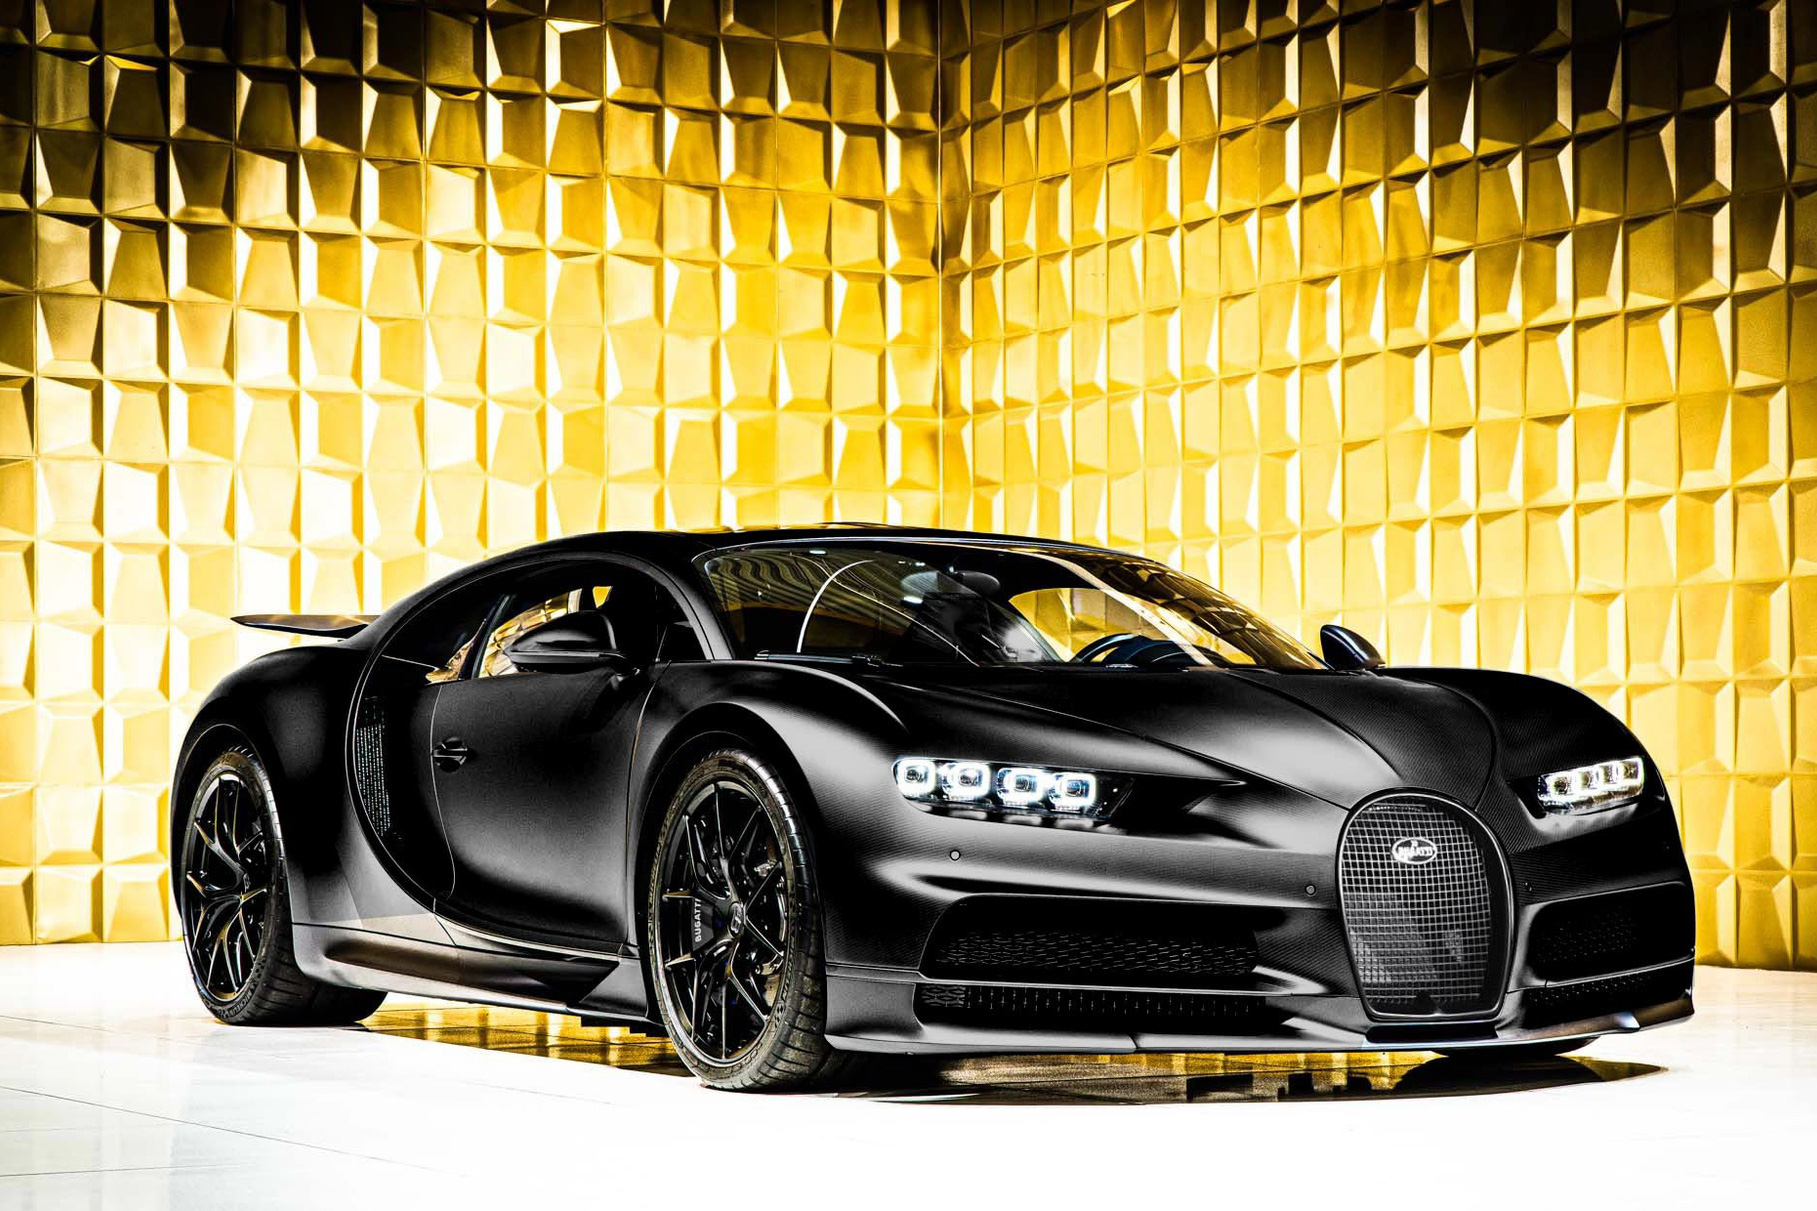 Bugatti công bố thông tin buồn vui lẫn lộn cho giới đại gia chờ hậu duệ của Chiron